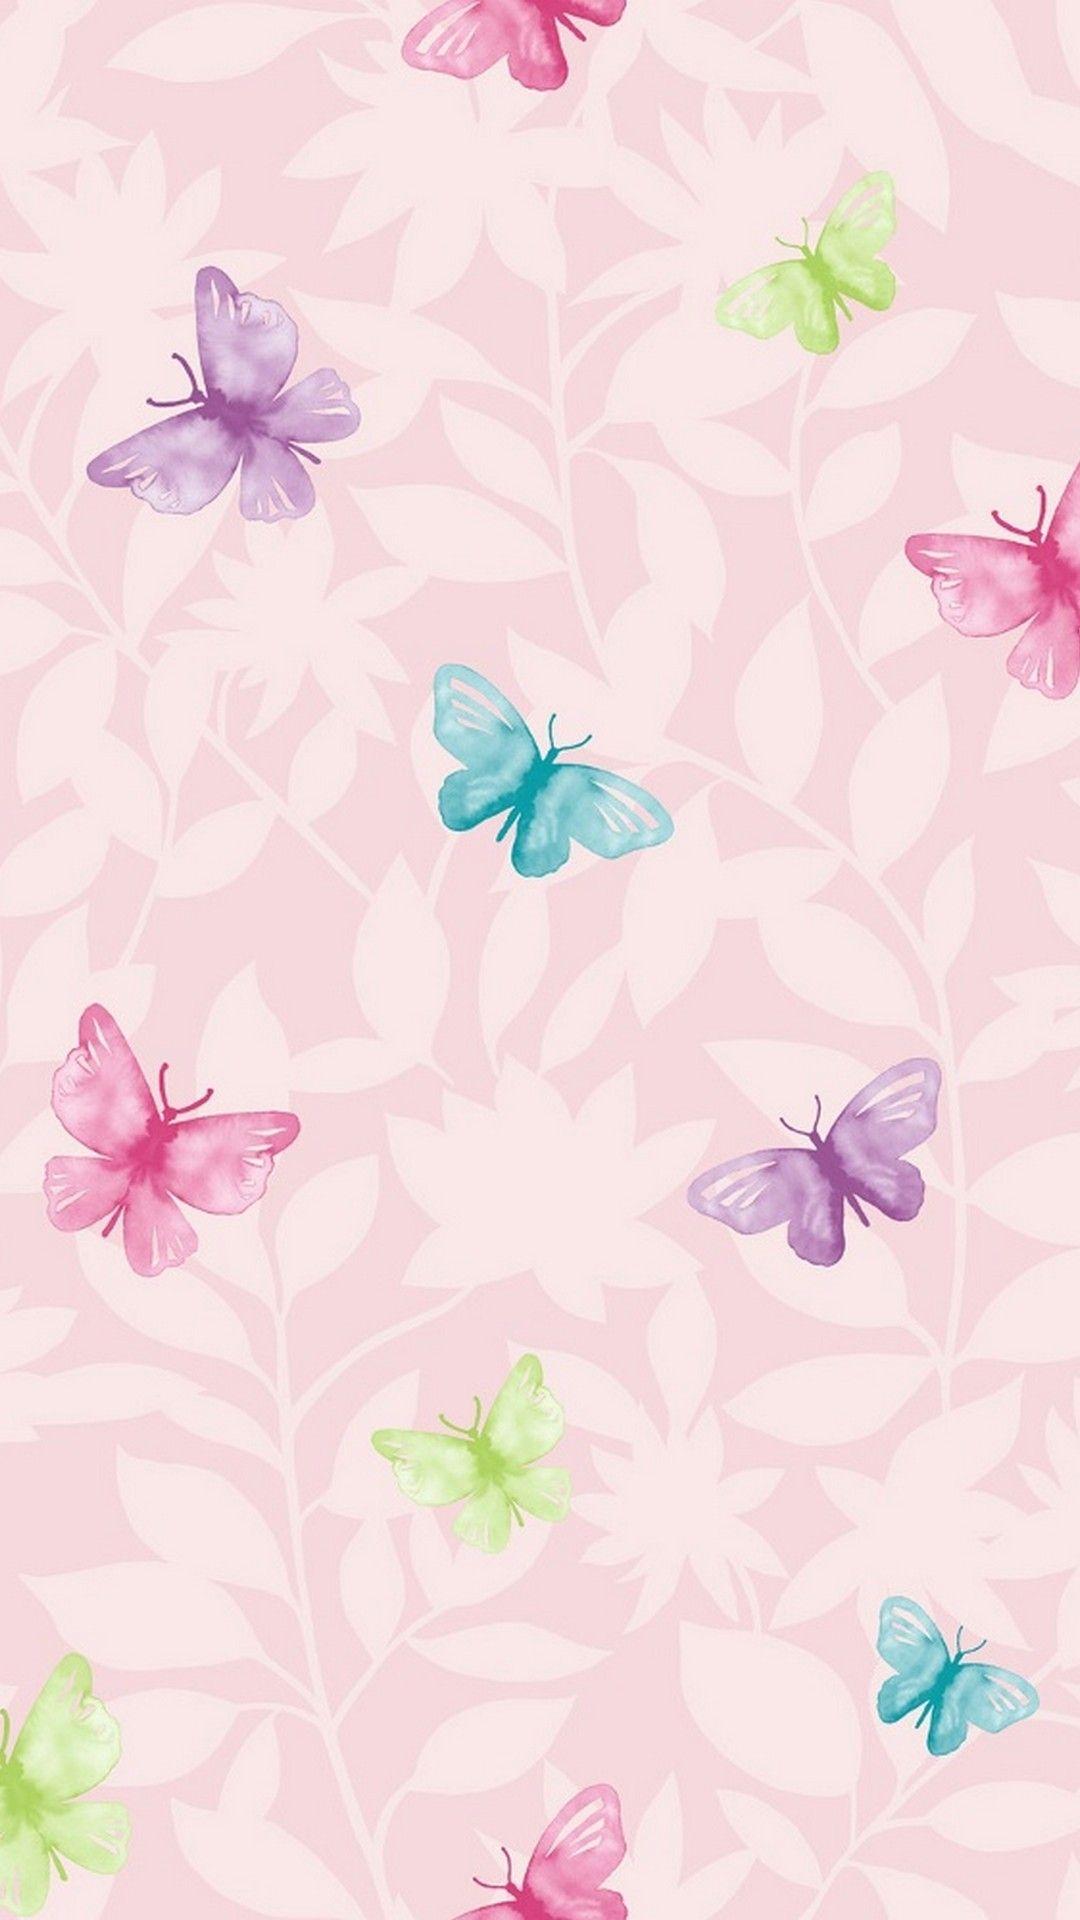 Wallpaper Pink Butterfly Mobile. Best HD Wallpaper. Butterfly wallpaper, Flower background wallpaper, Flower wallpaper